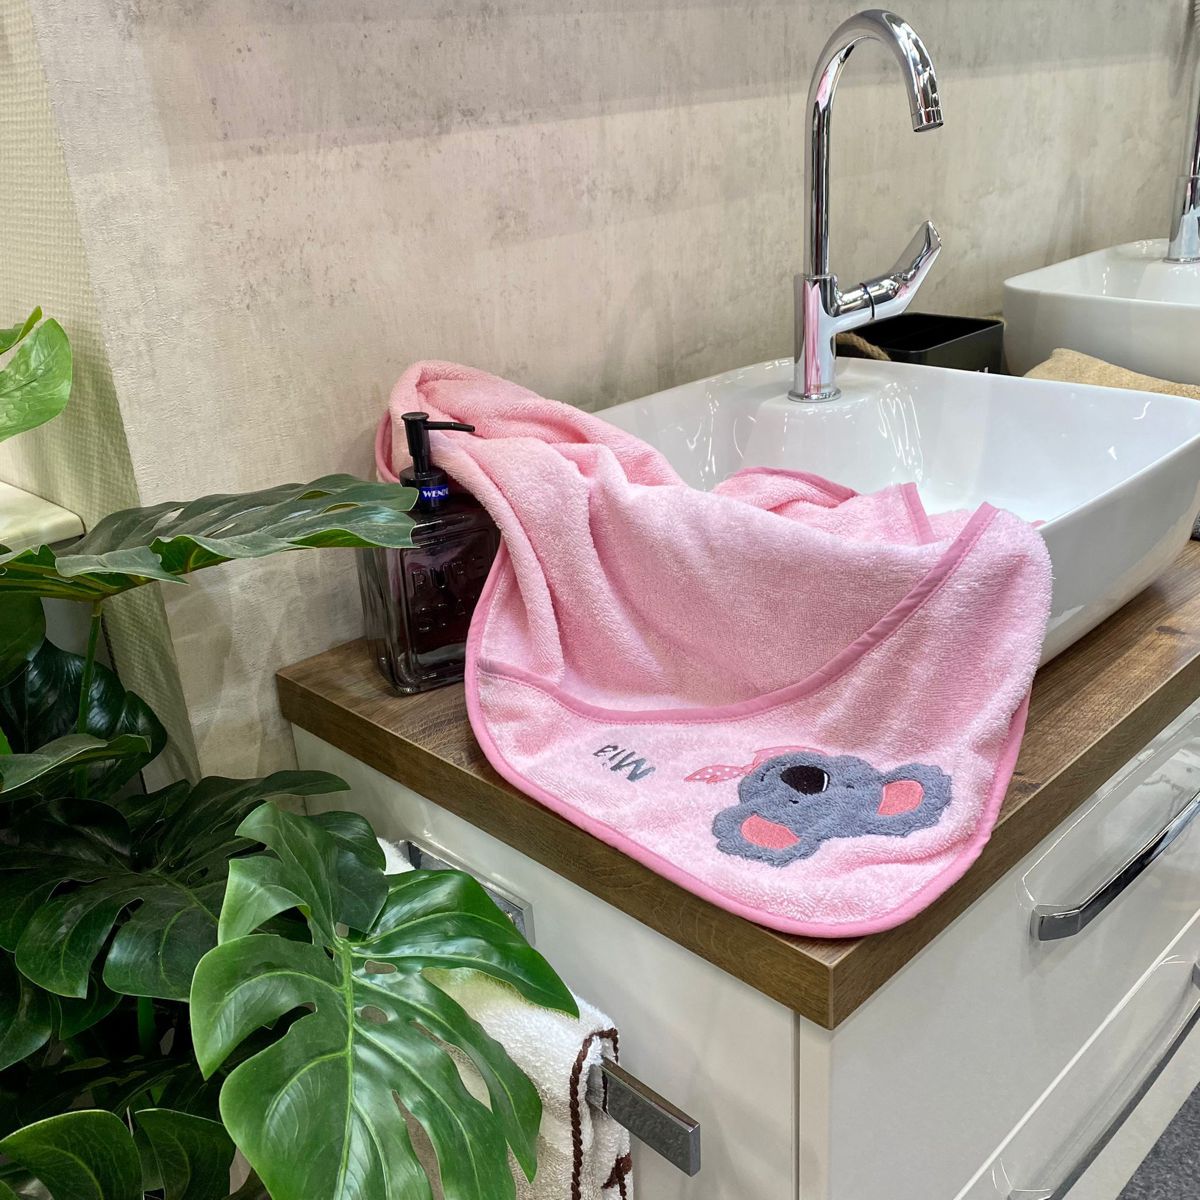 BIO-Handtuch Koala rosa liegt auf Waschbecken